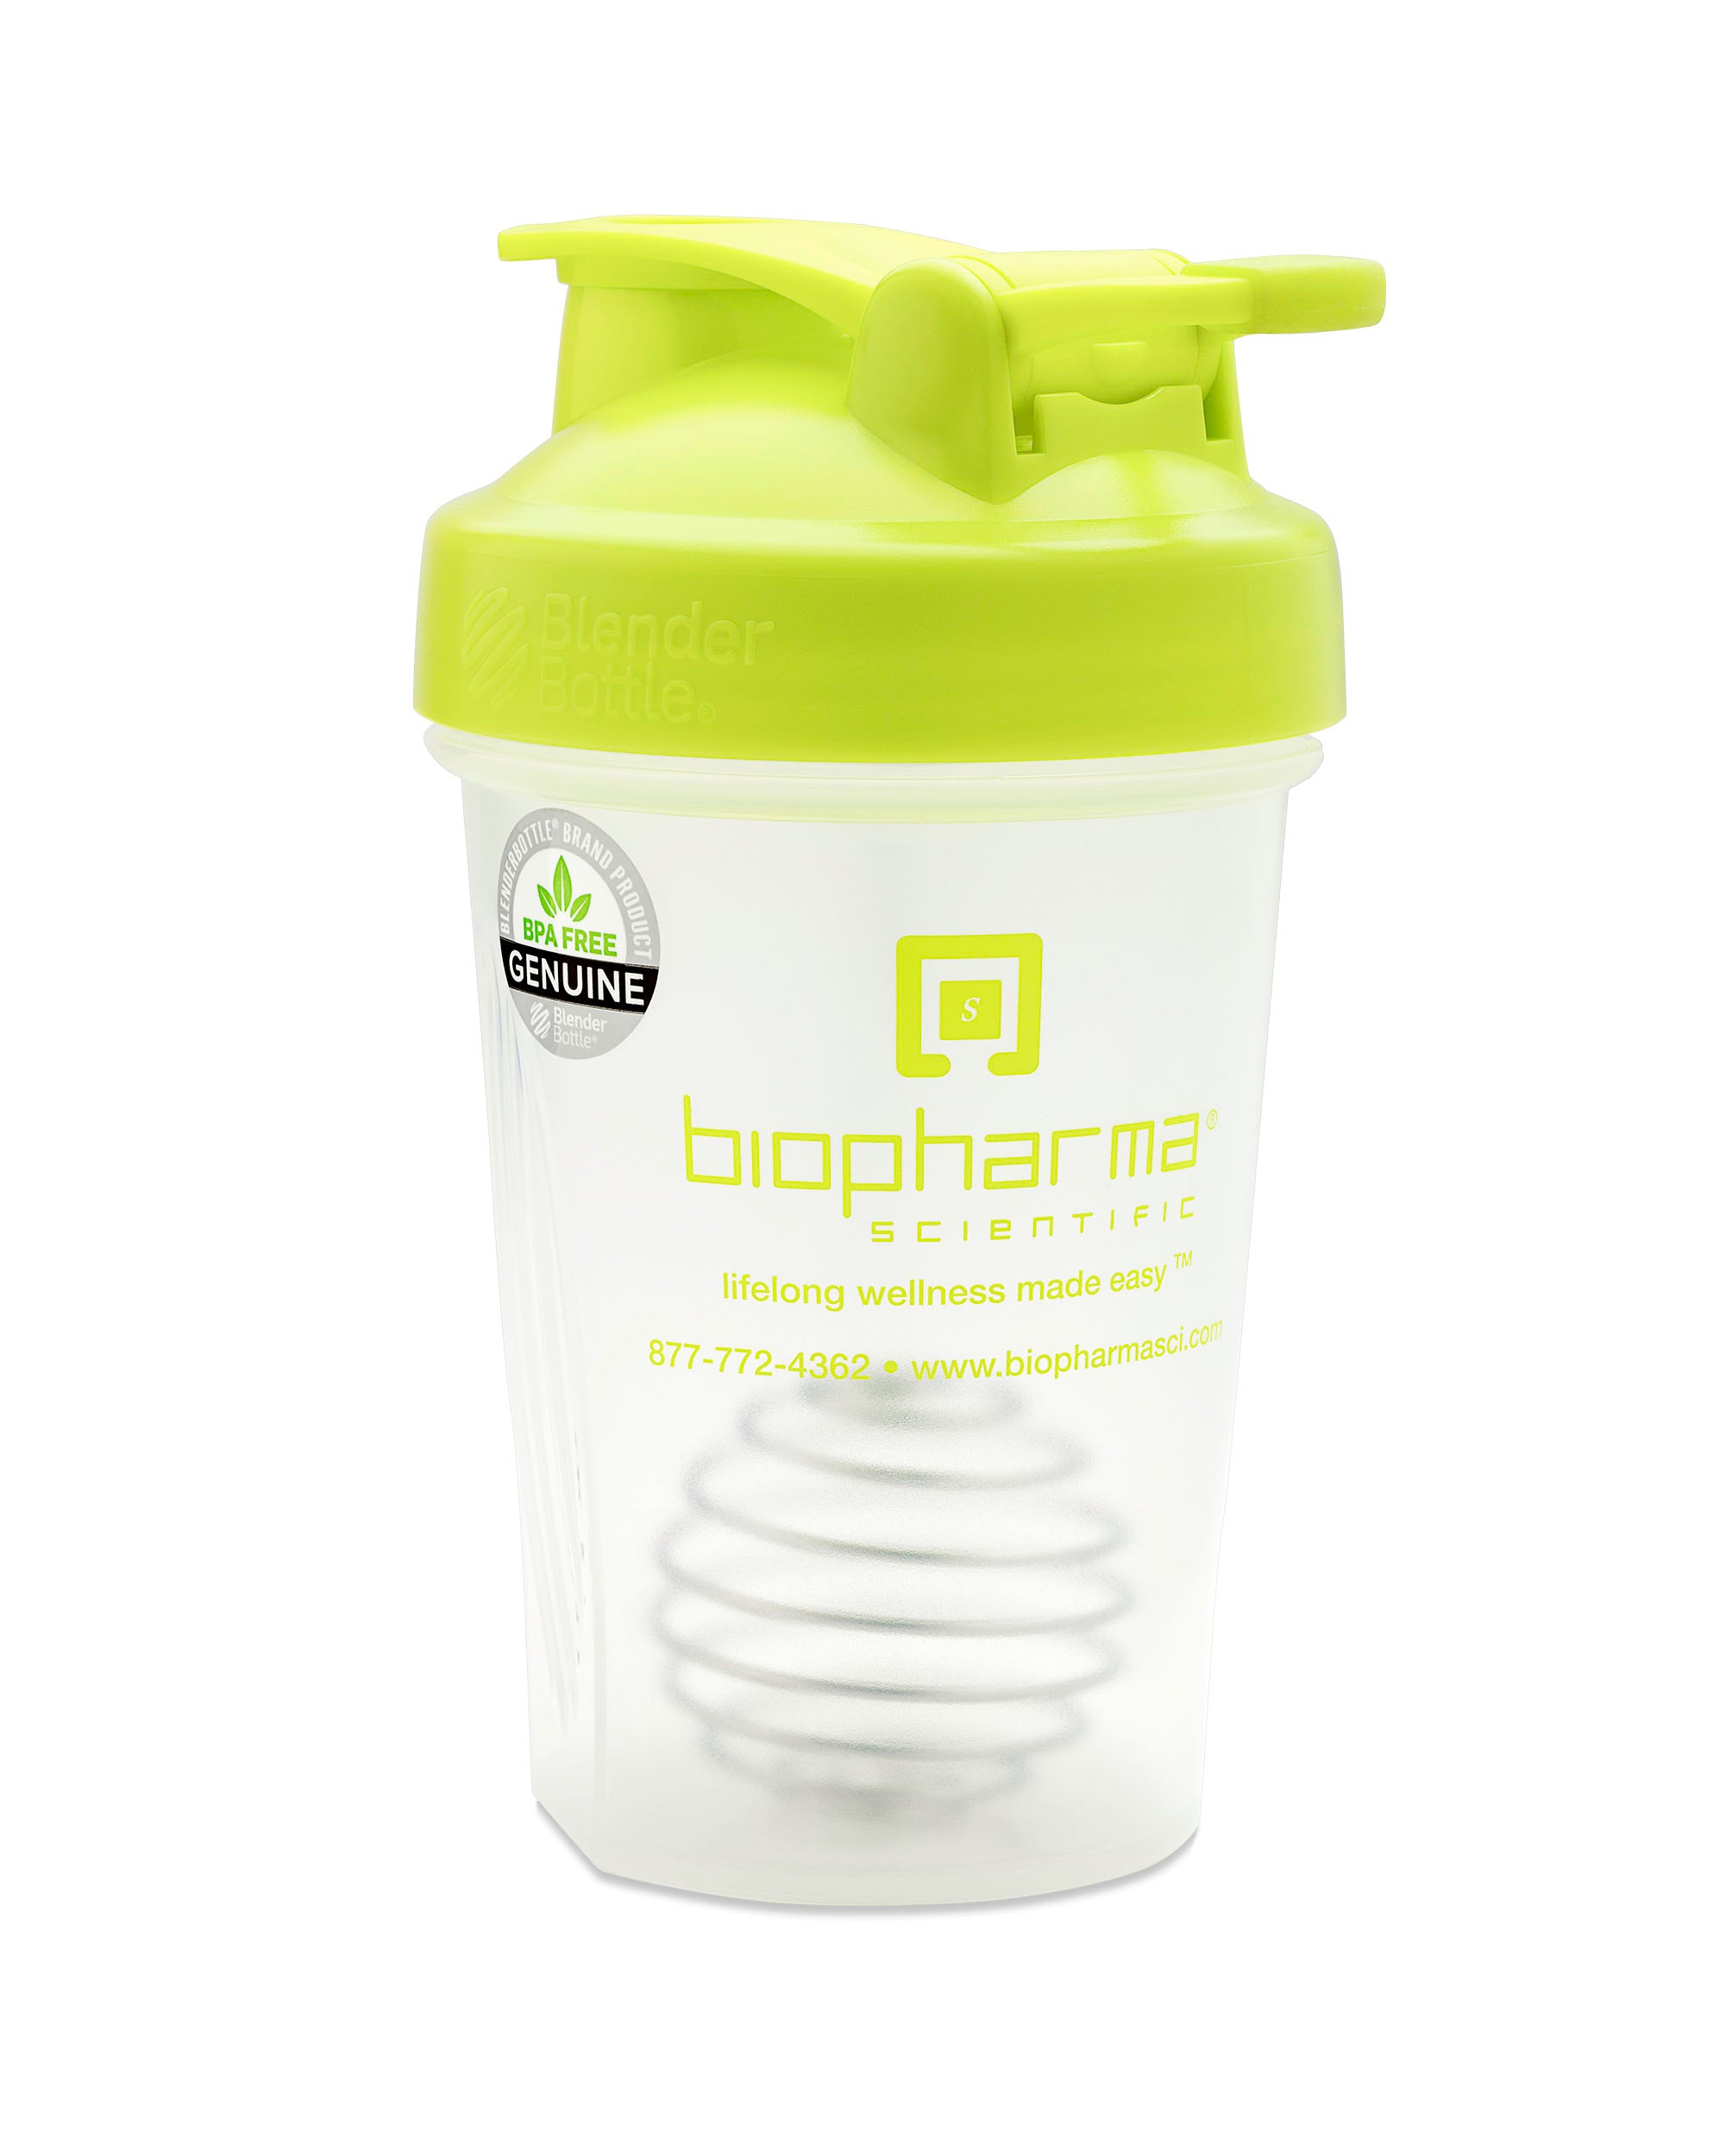 Protein Shaker Bottle – Innovation